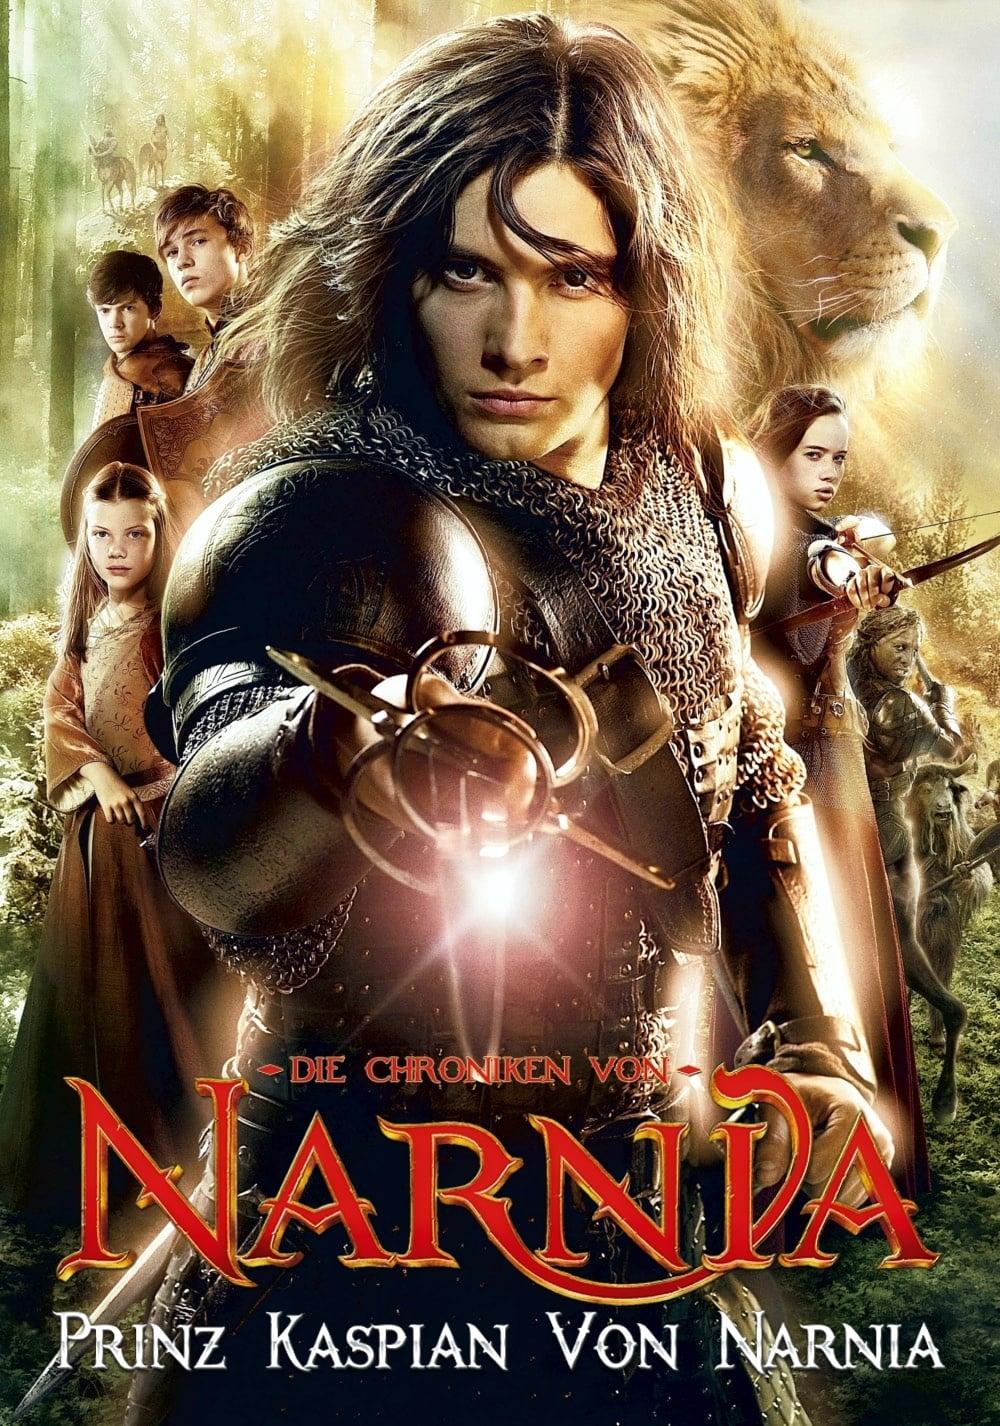 Die Chroniken von Narnia: Prinz Kaspian von Narnia poster